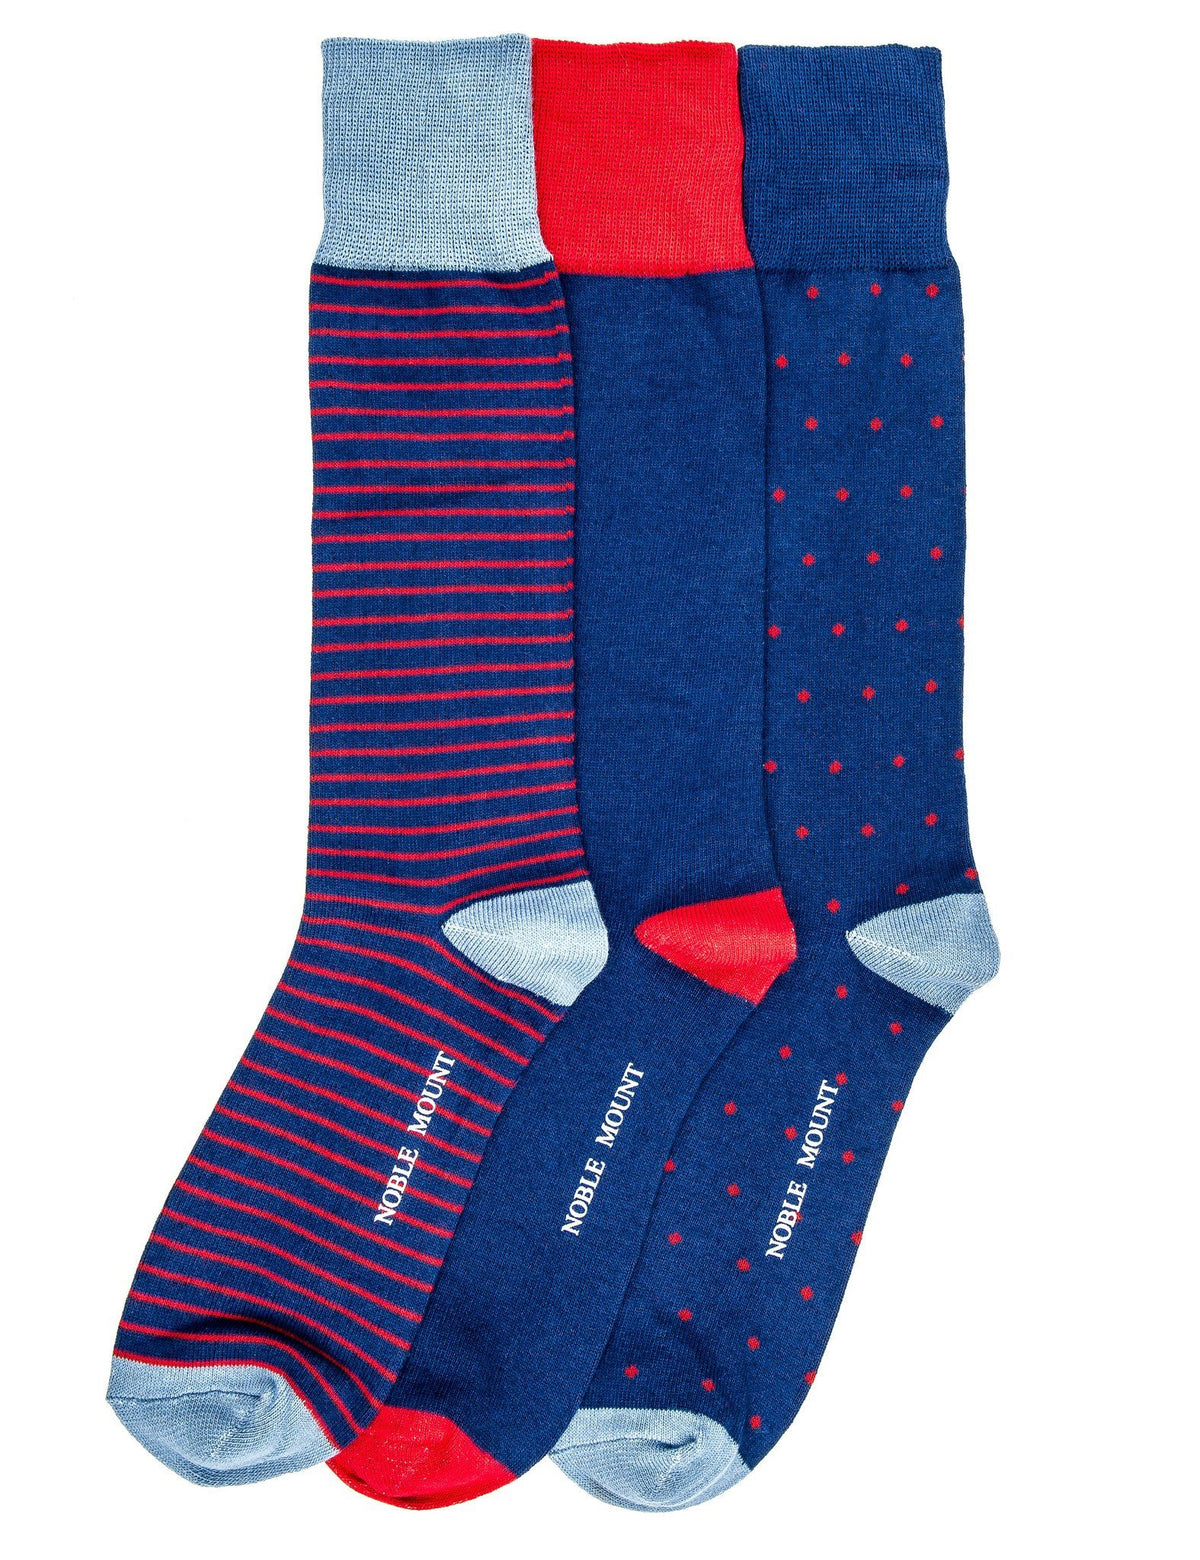 Men's Combed Cotton Dress Socks 3-Pack - Set 2